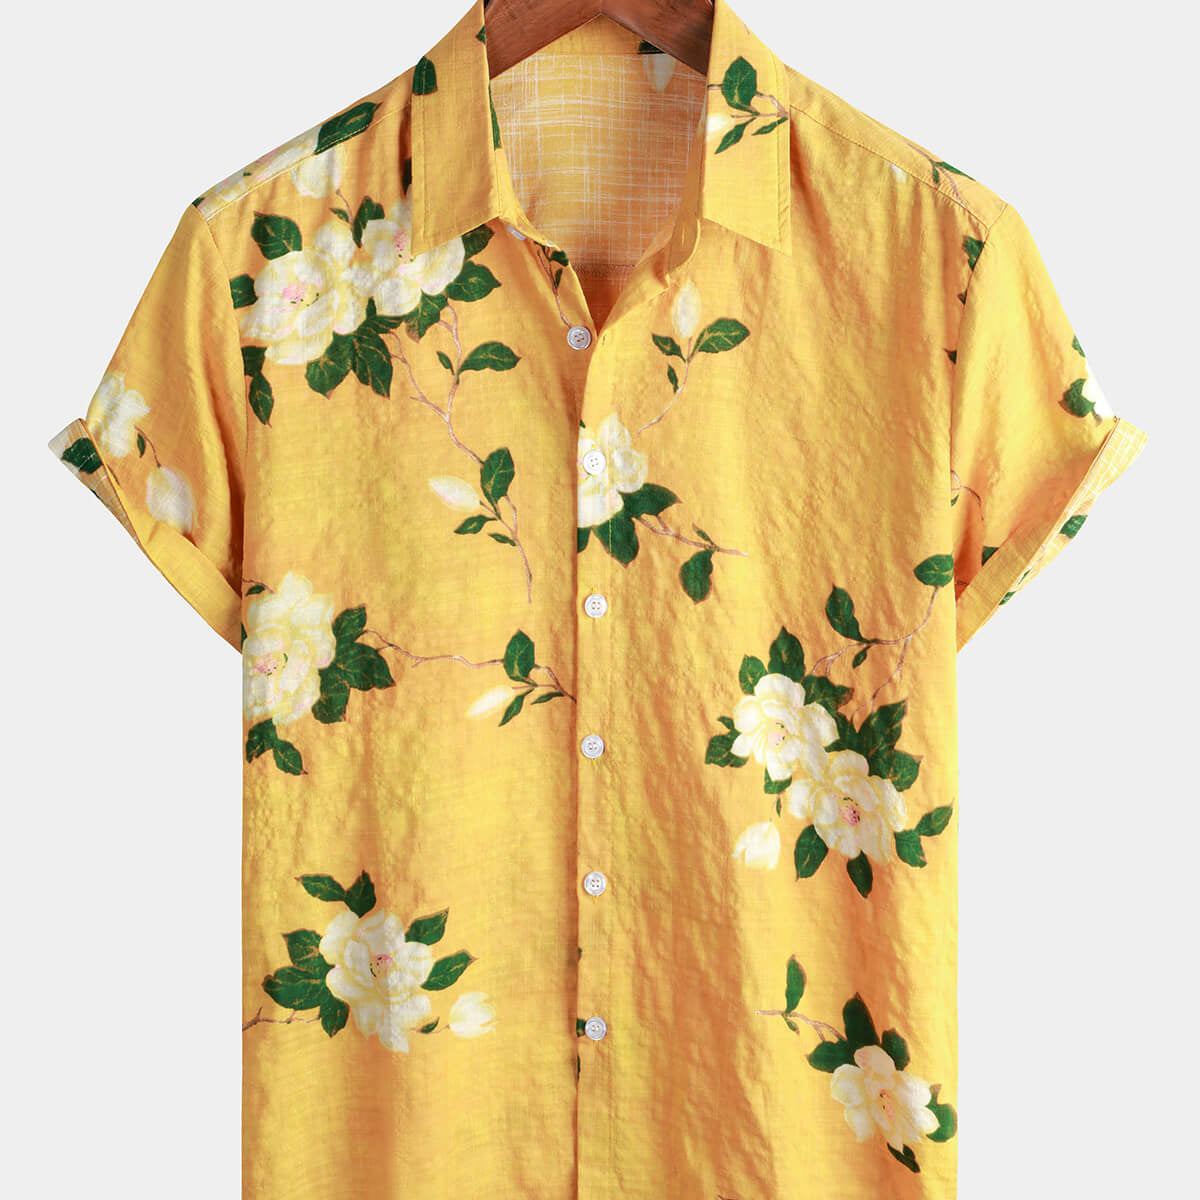 Camisa hawaiana de manga corta transpirable de algodón floral vintage amarillo para hombre